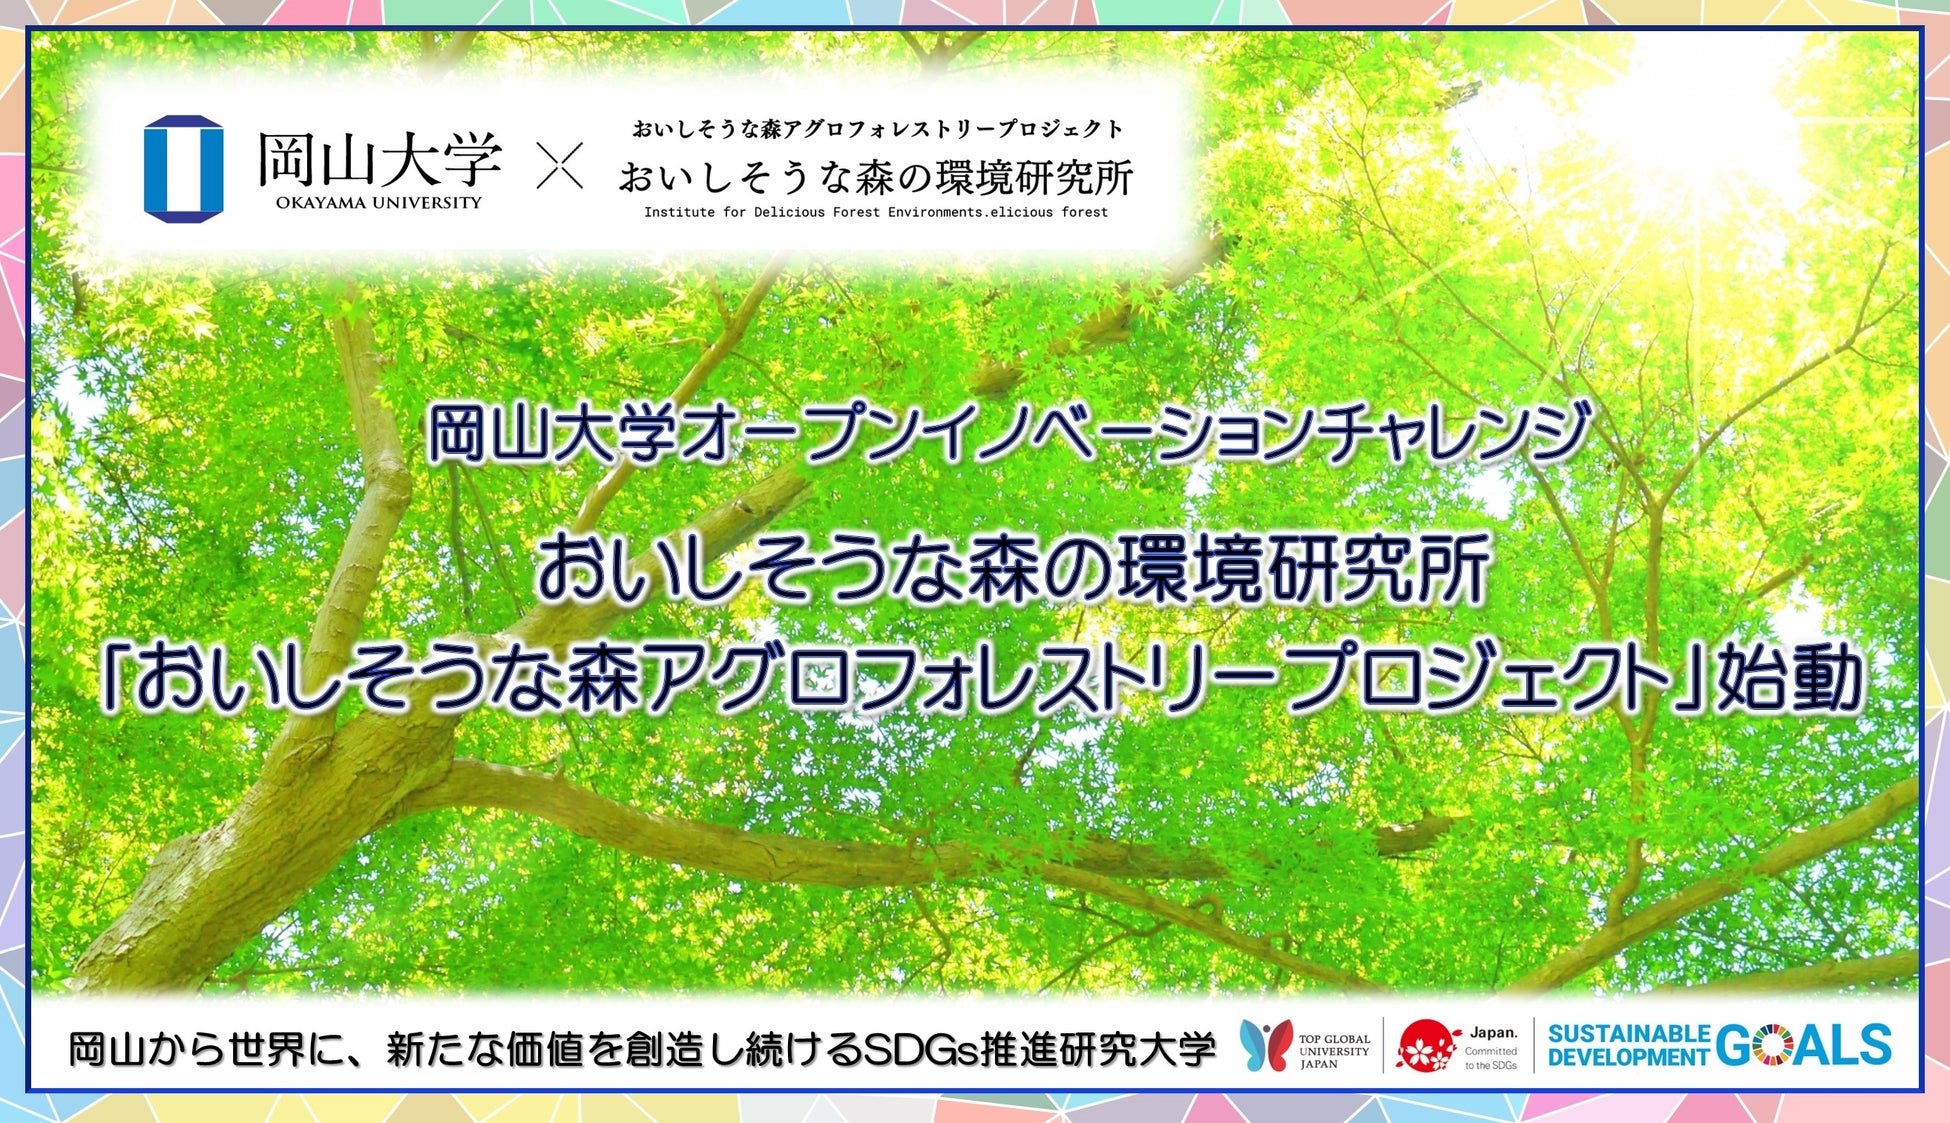 【岡山大学 x おいしそうな森の環境研究所】「おいしそうな森アグロフォレストリープロジェクト」始動のサブ画像1